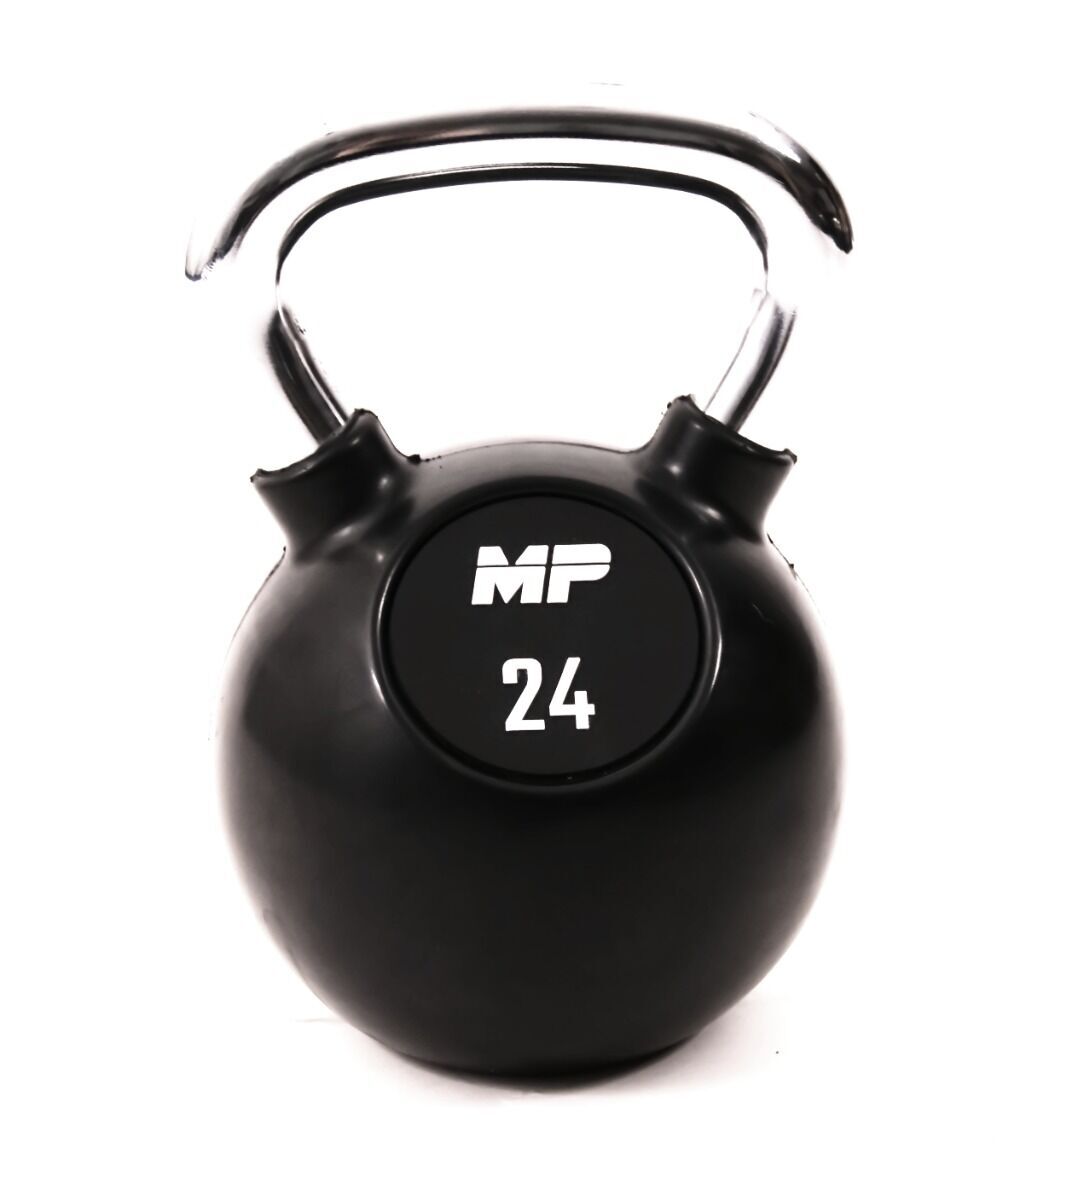 Muscle Power Rubberen Kettlebell - Zwart - 24 kg